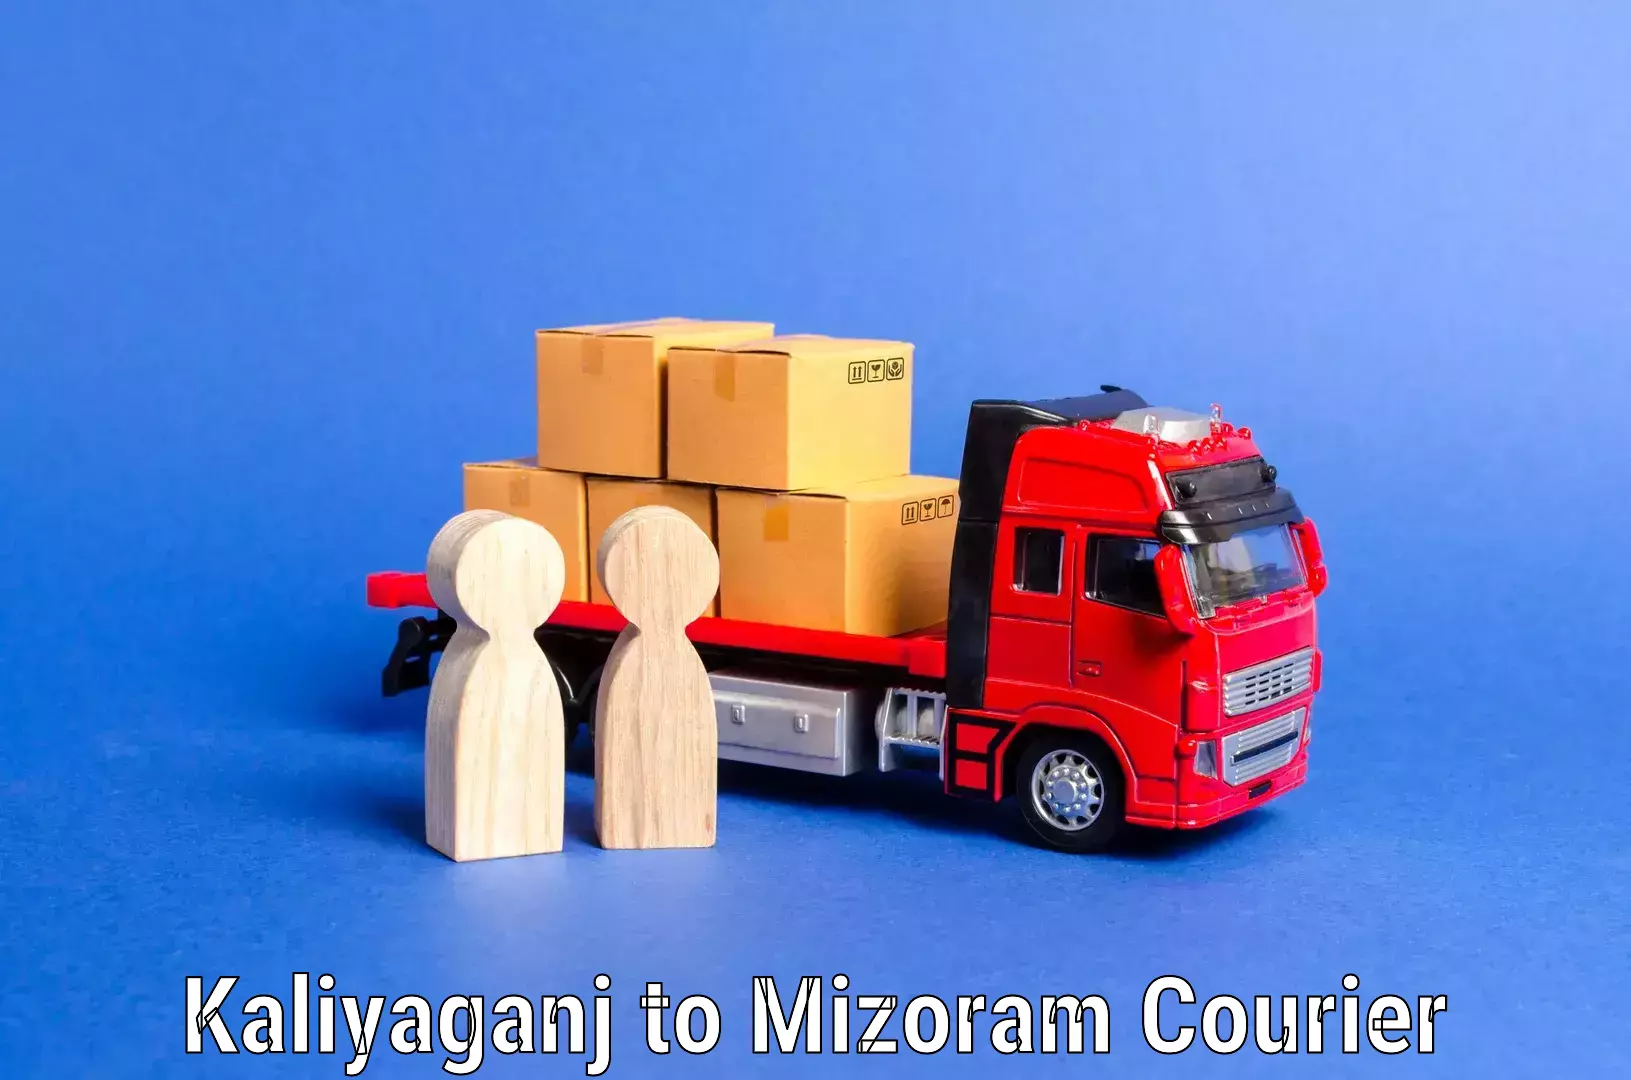 Furniture transport professionals Kaliyaganj to Mizoram